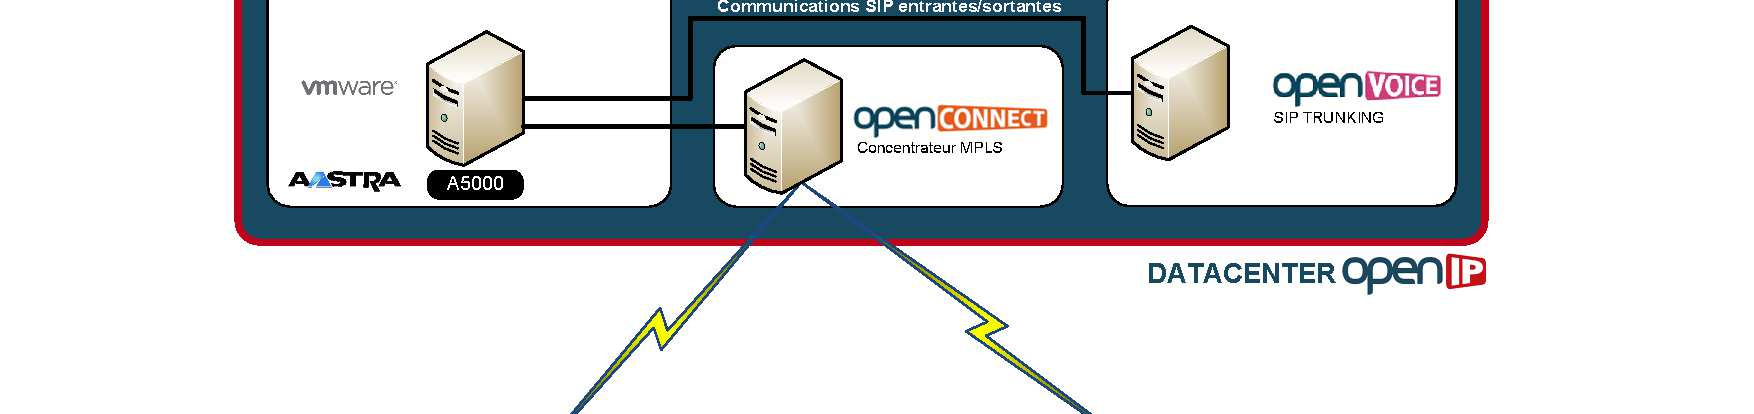 Mise en place de la solution Aastra A5000 virtualisée La solution OpenIP OpenVoice / Aastra A5000 se décline en 2 architectures sécurisées: Avec l